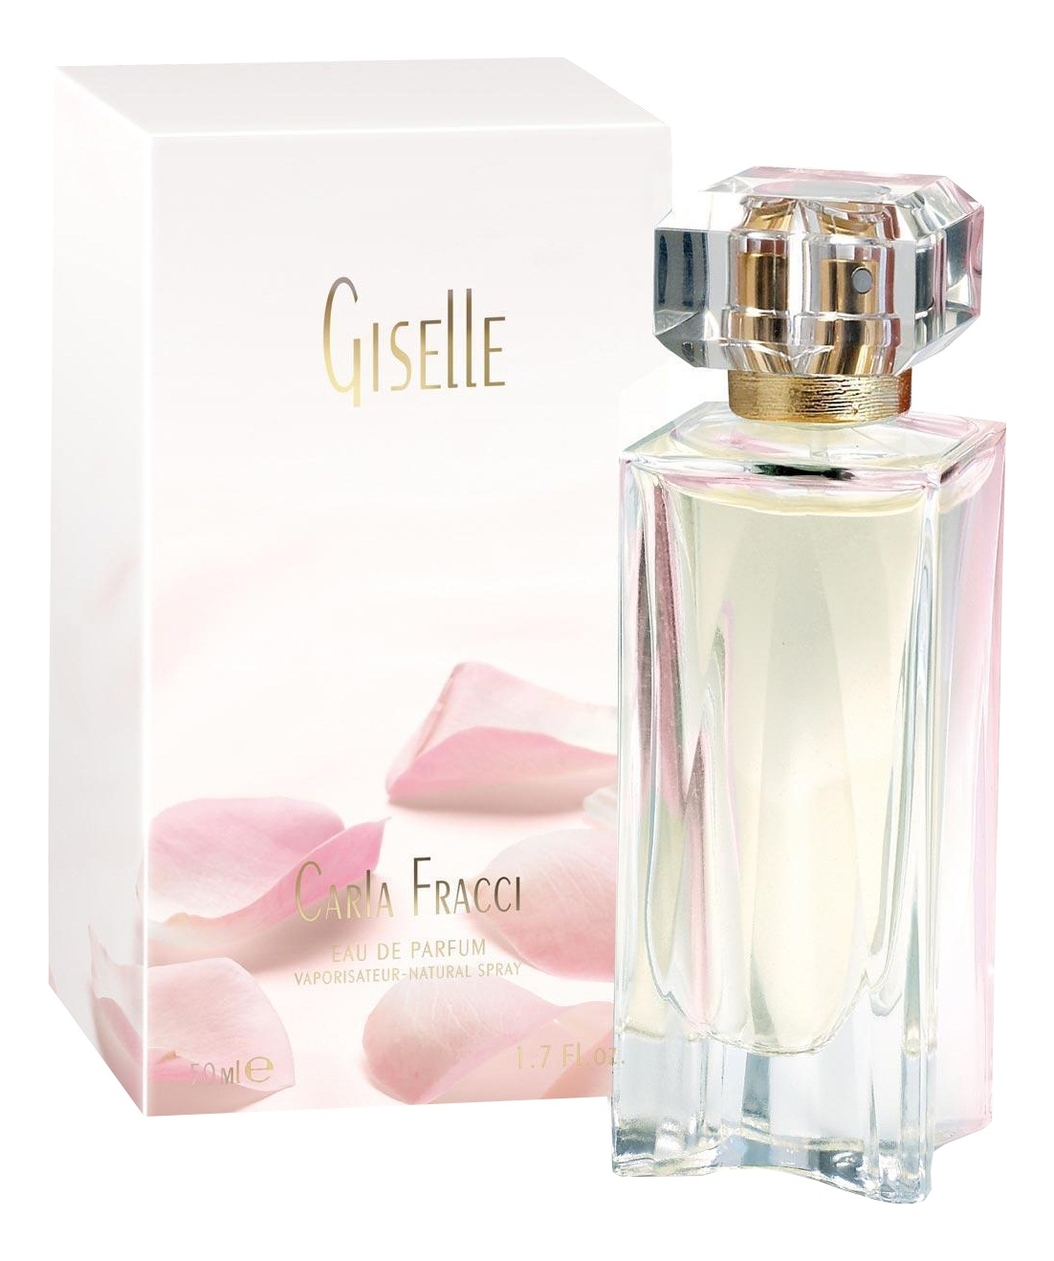 Купить Giselle: парфюмерная вода 50мл, Carla Fracci